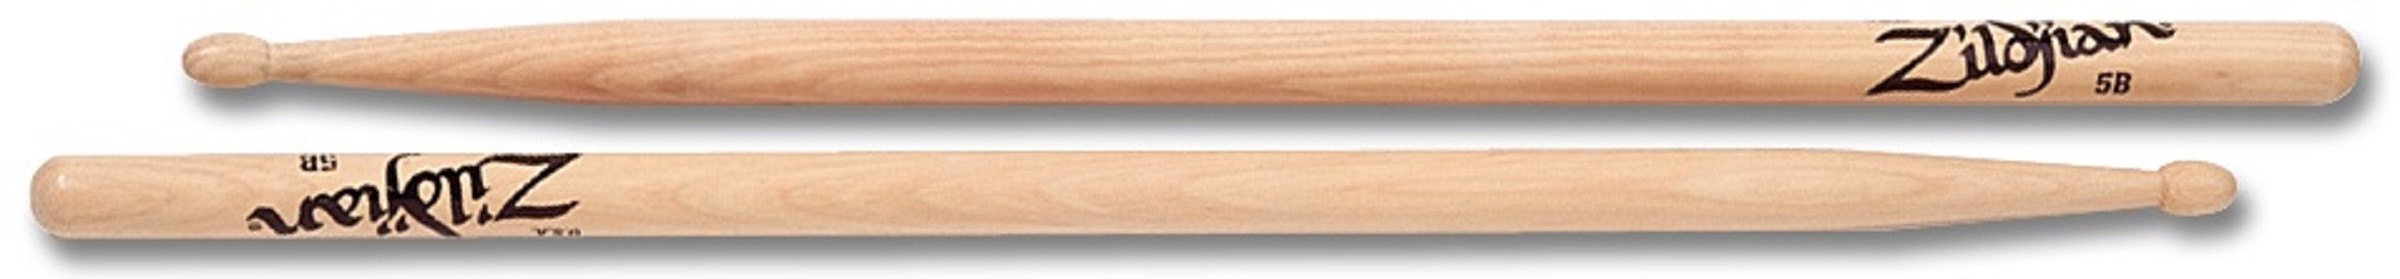 Zildjian Sticks Hickory 5B Wood Tip 5BWN